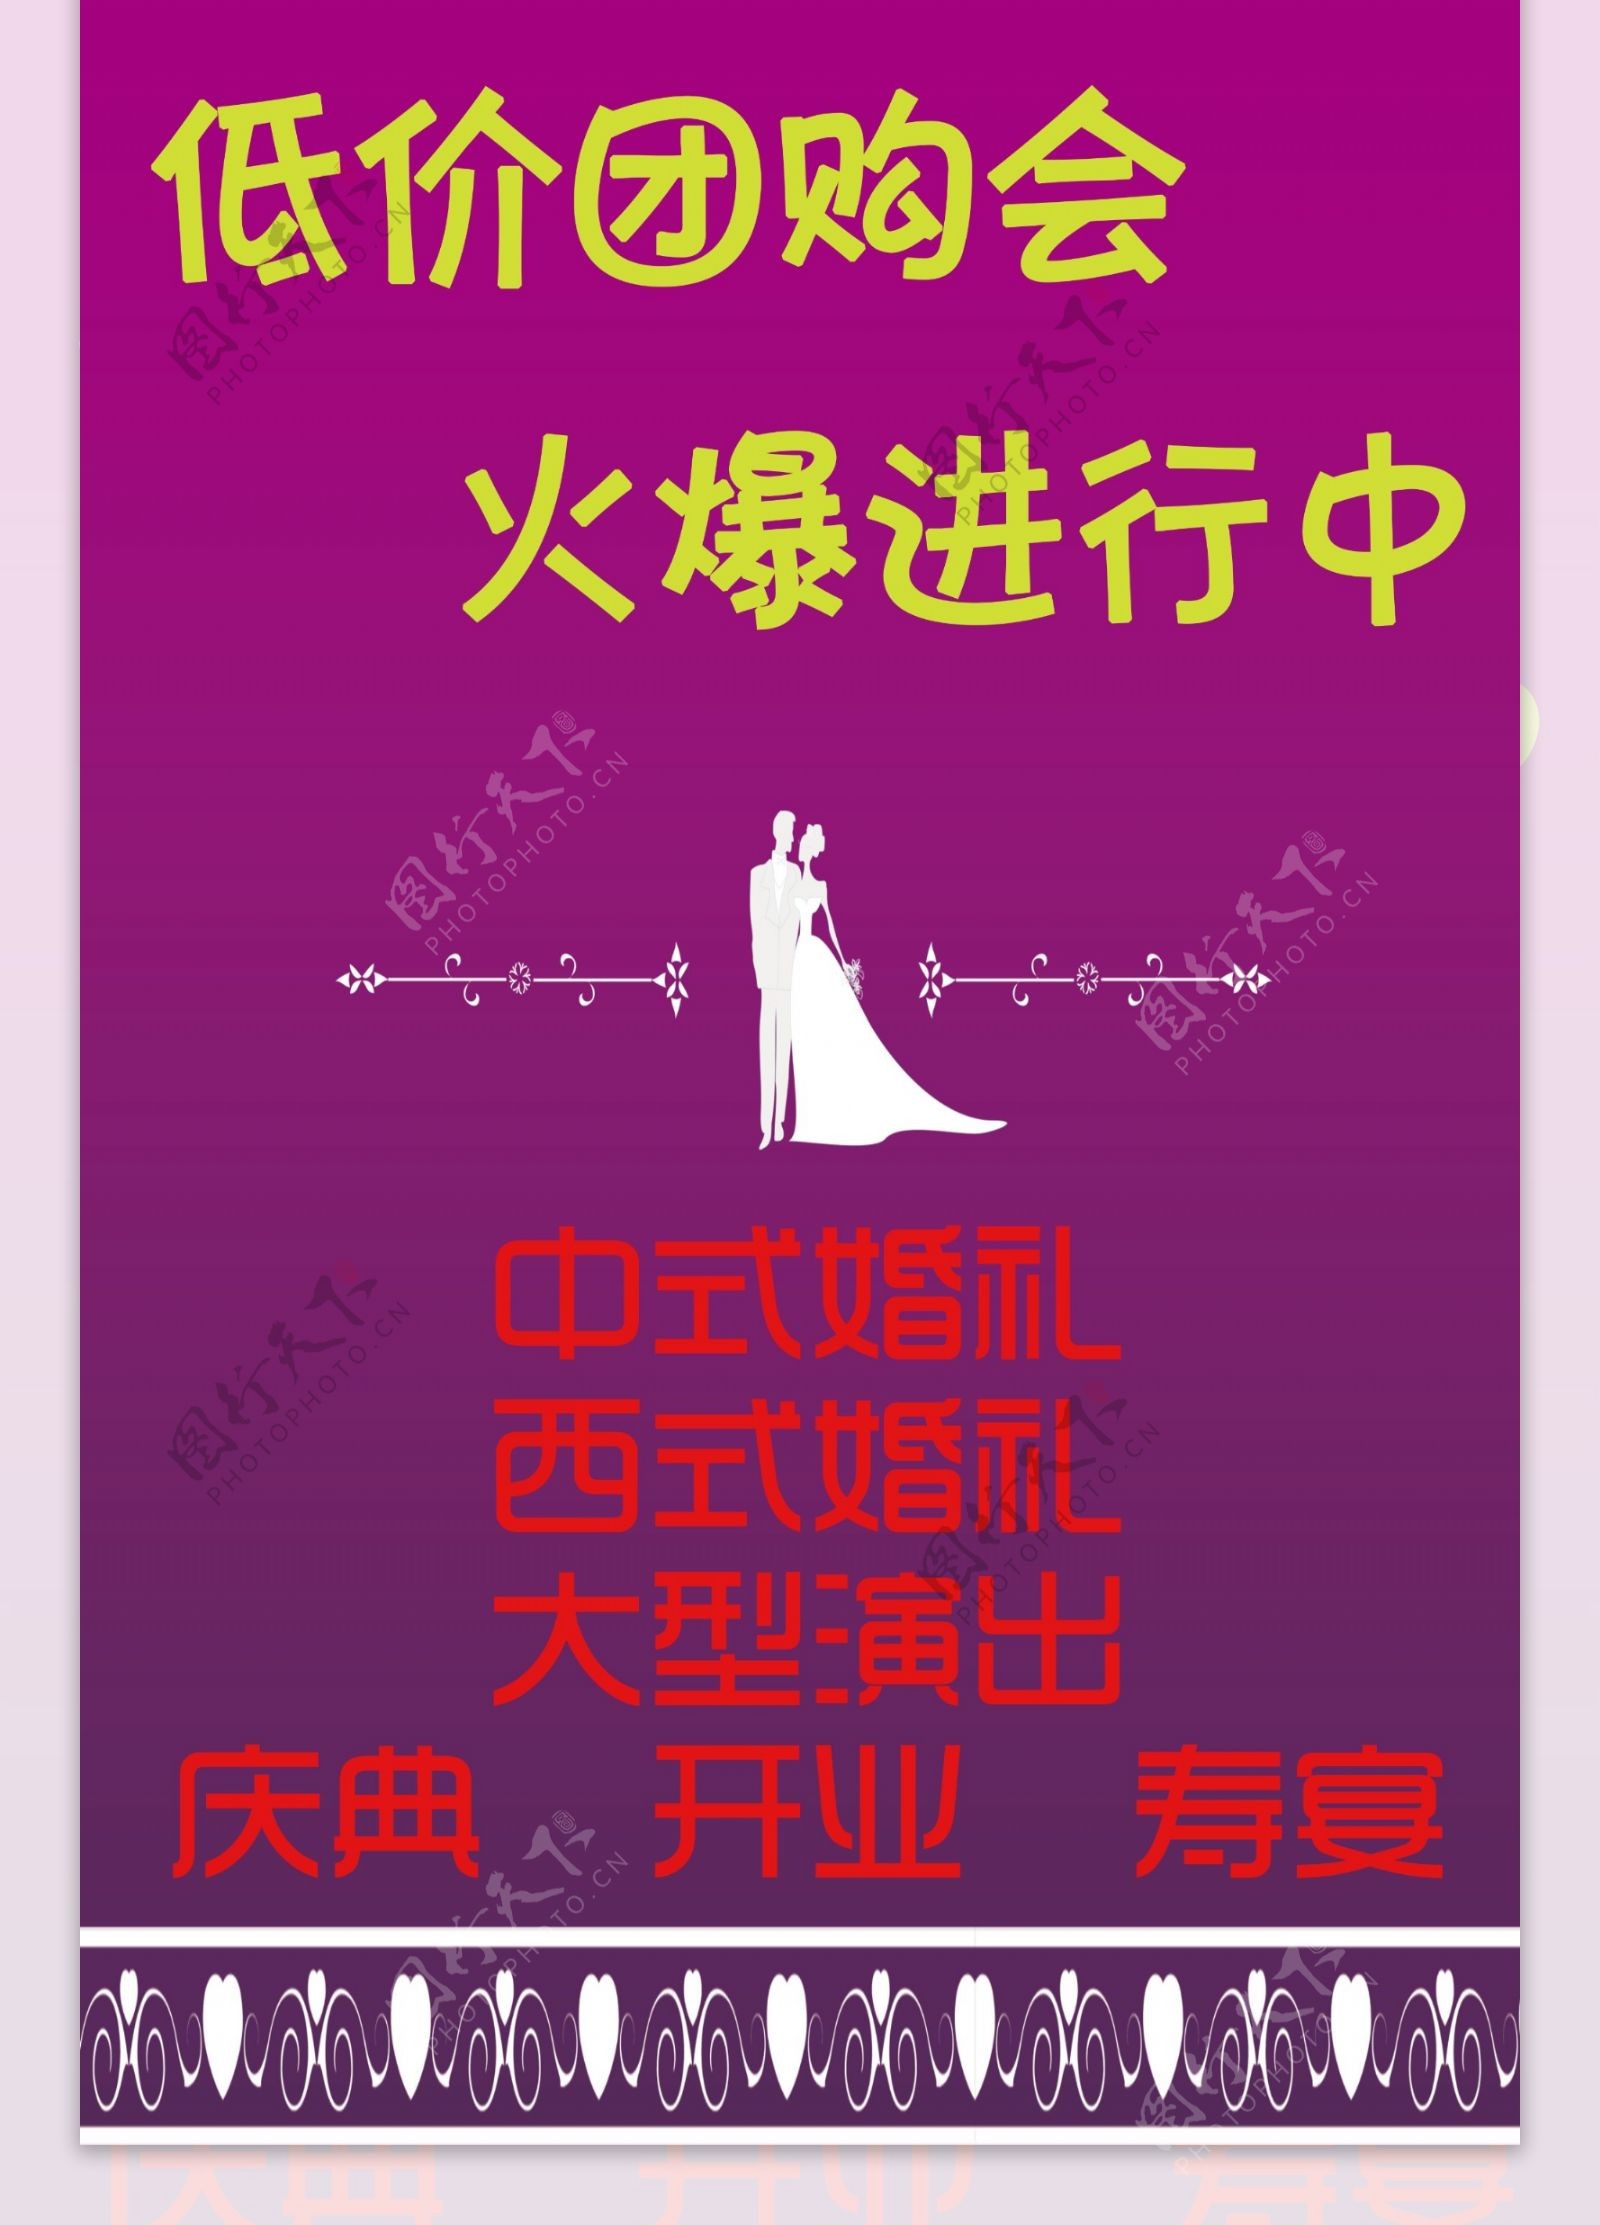 婚庆宣传广告背景图高清psd源文件